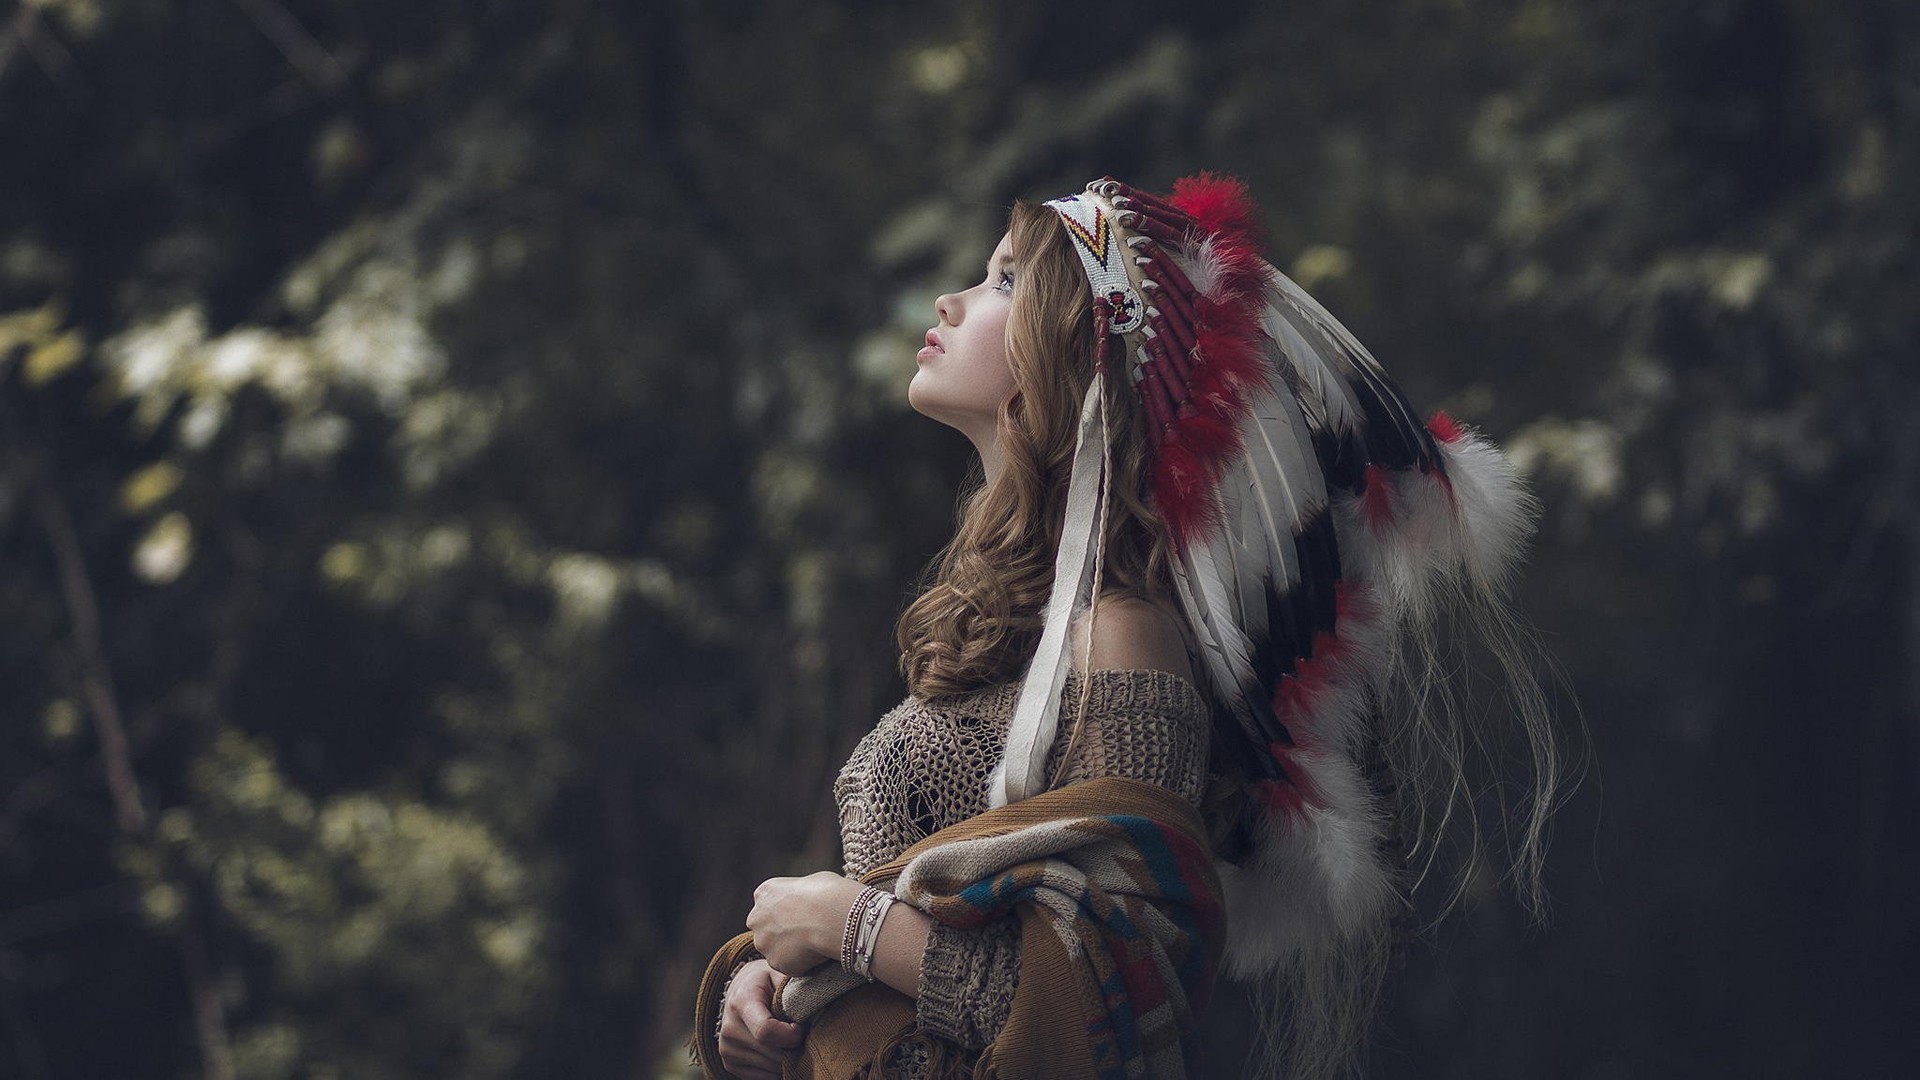 sfondi hd nativi americani,bellezza,occhio,fotografia,cg artwork,albero